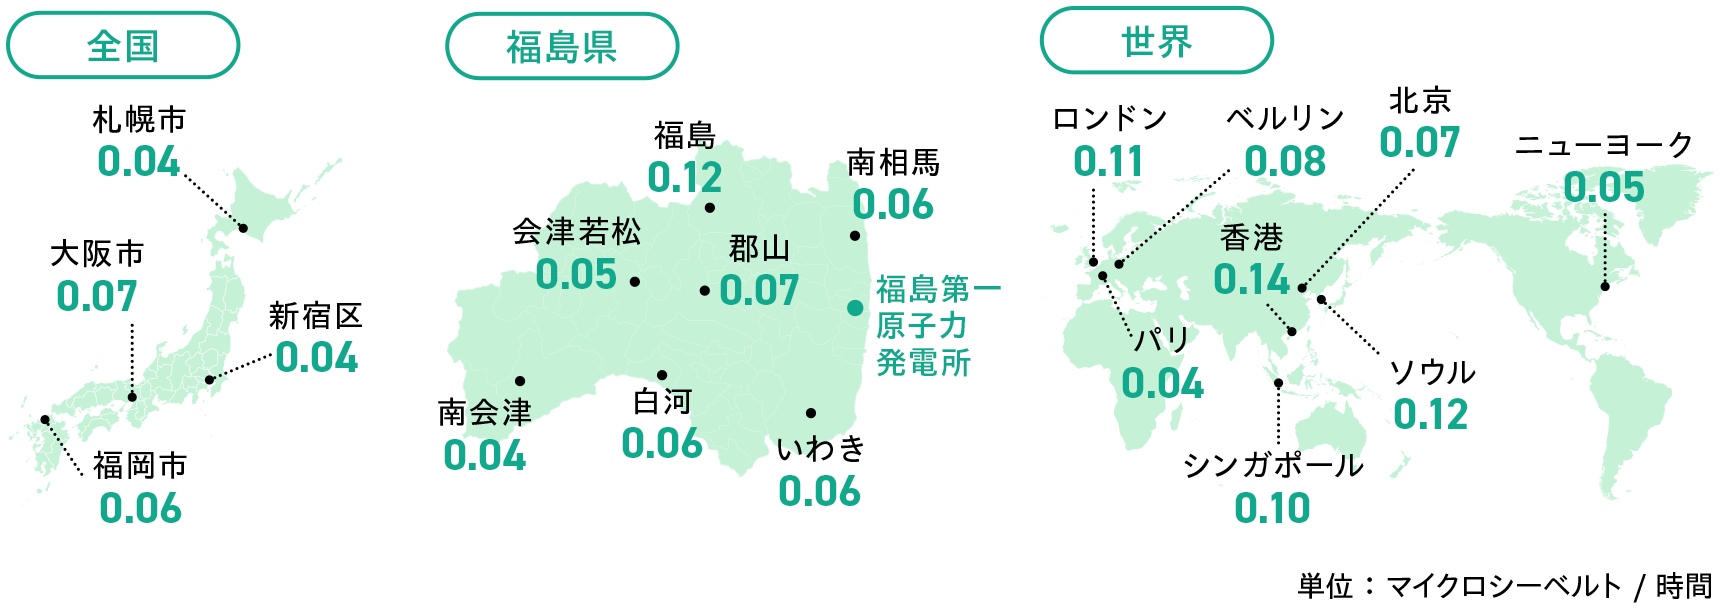 福島県と世界の主要都市の空間線量の図